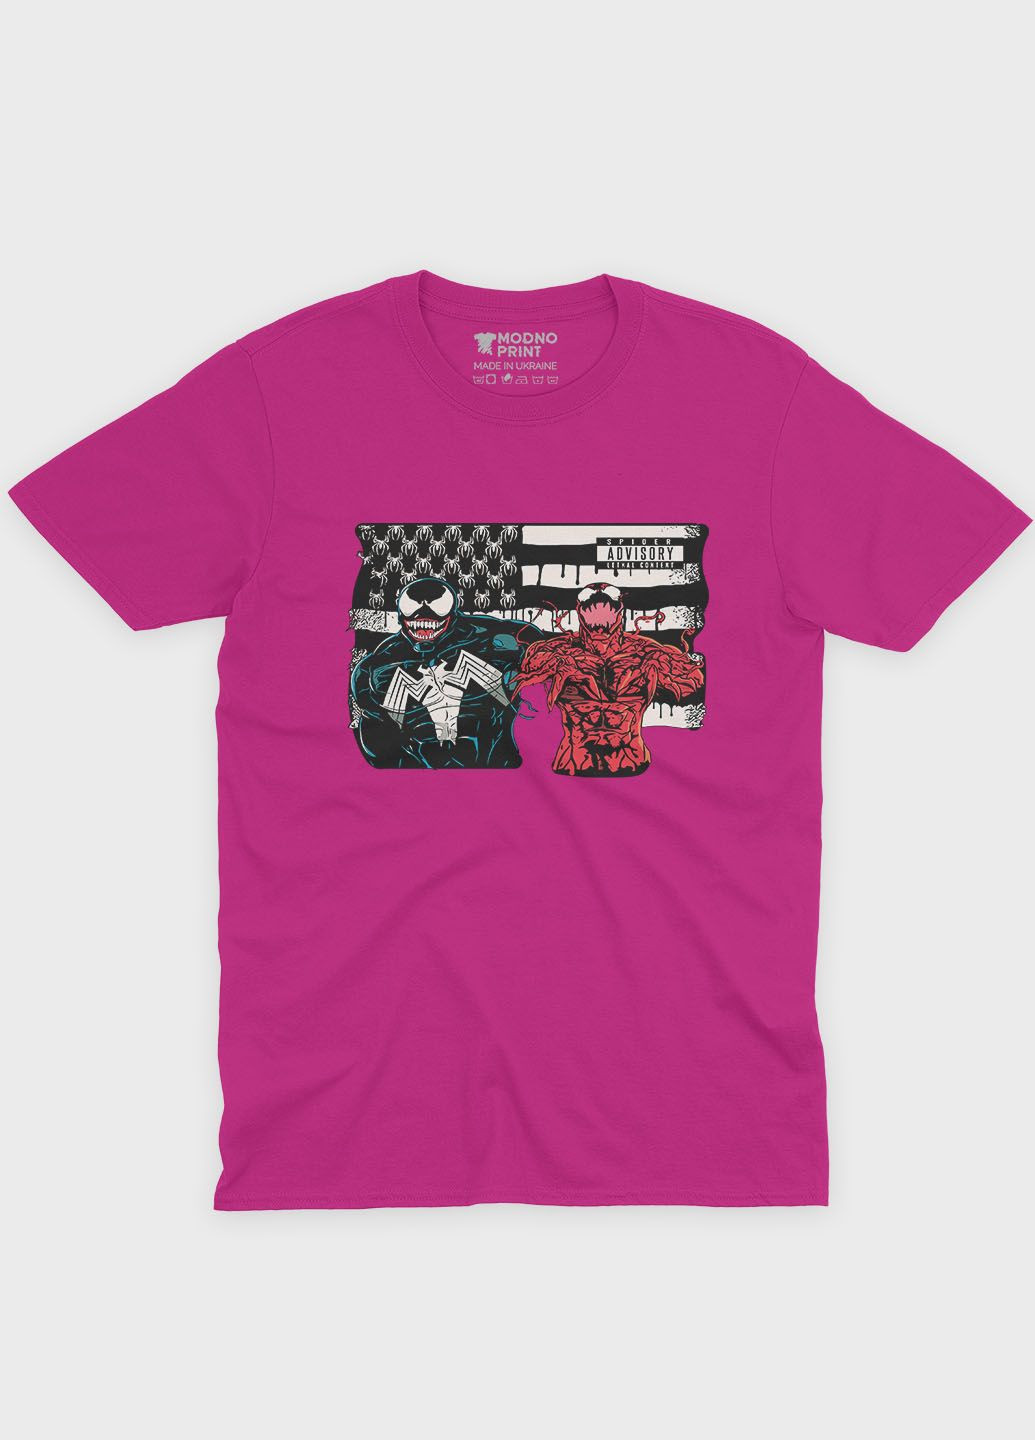 Розовая демисезонная футболка для девочки с принтом супервора - веном (ts001-1-fuxj-006-013-016-g) Modno